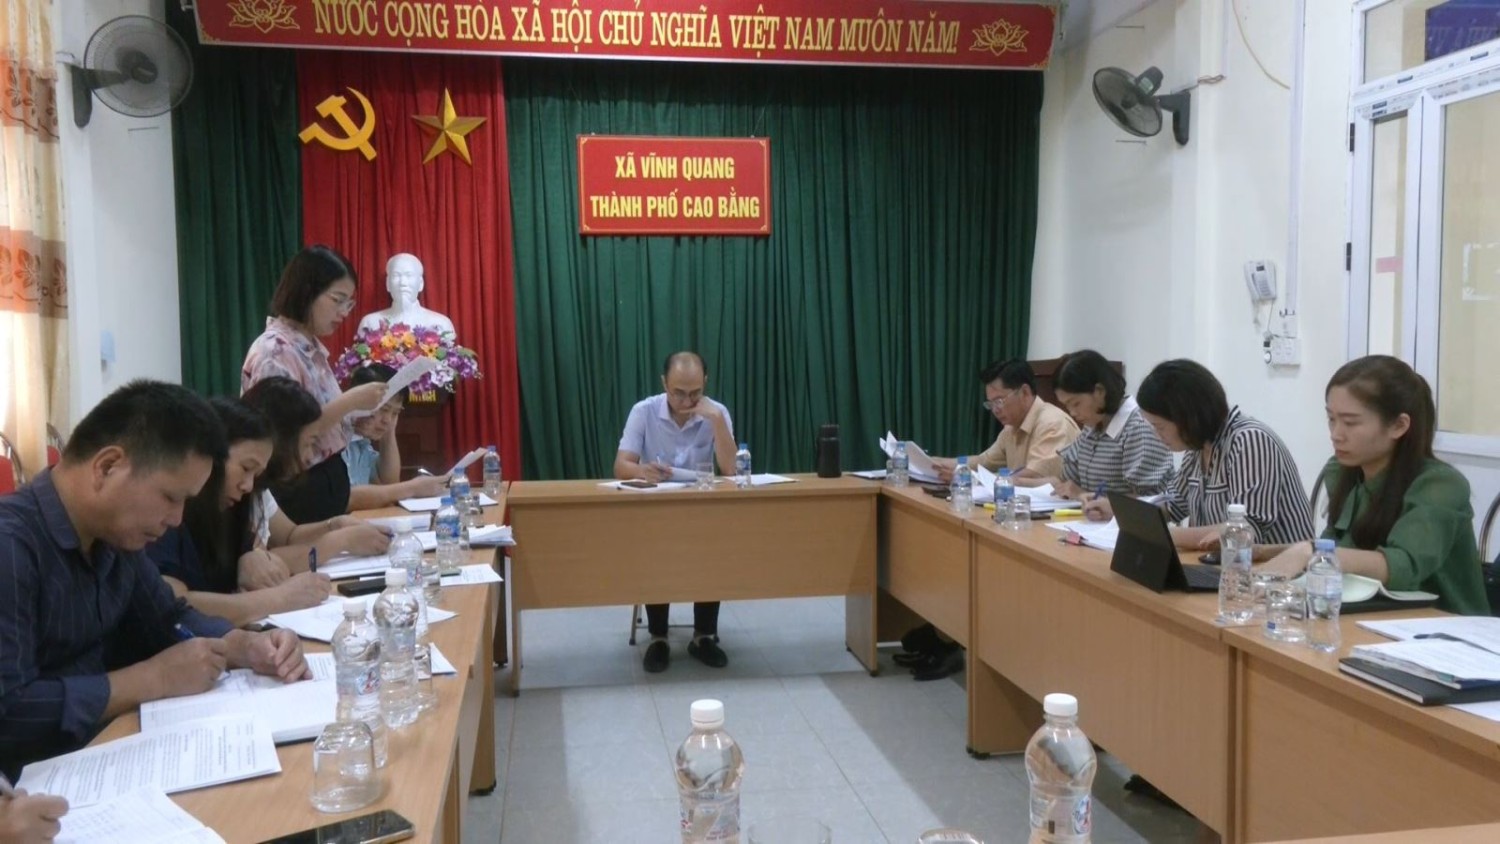 Đoàn giám sát Ban Kinh tế - Xã hội HĐND thành phố Cao Bằng giám sát tại xã Vĩnh Quang.